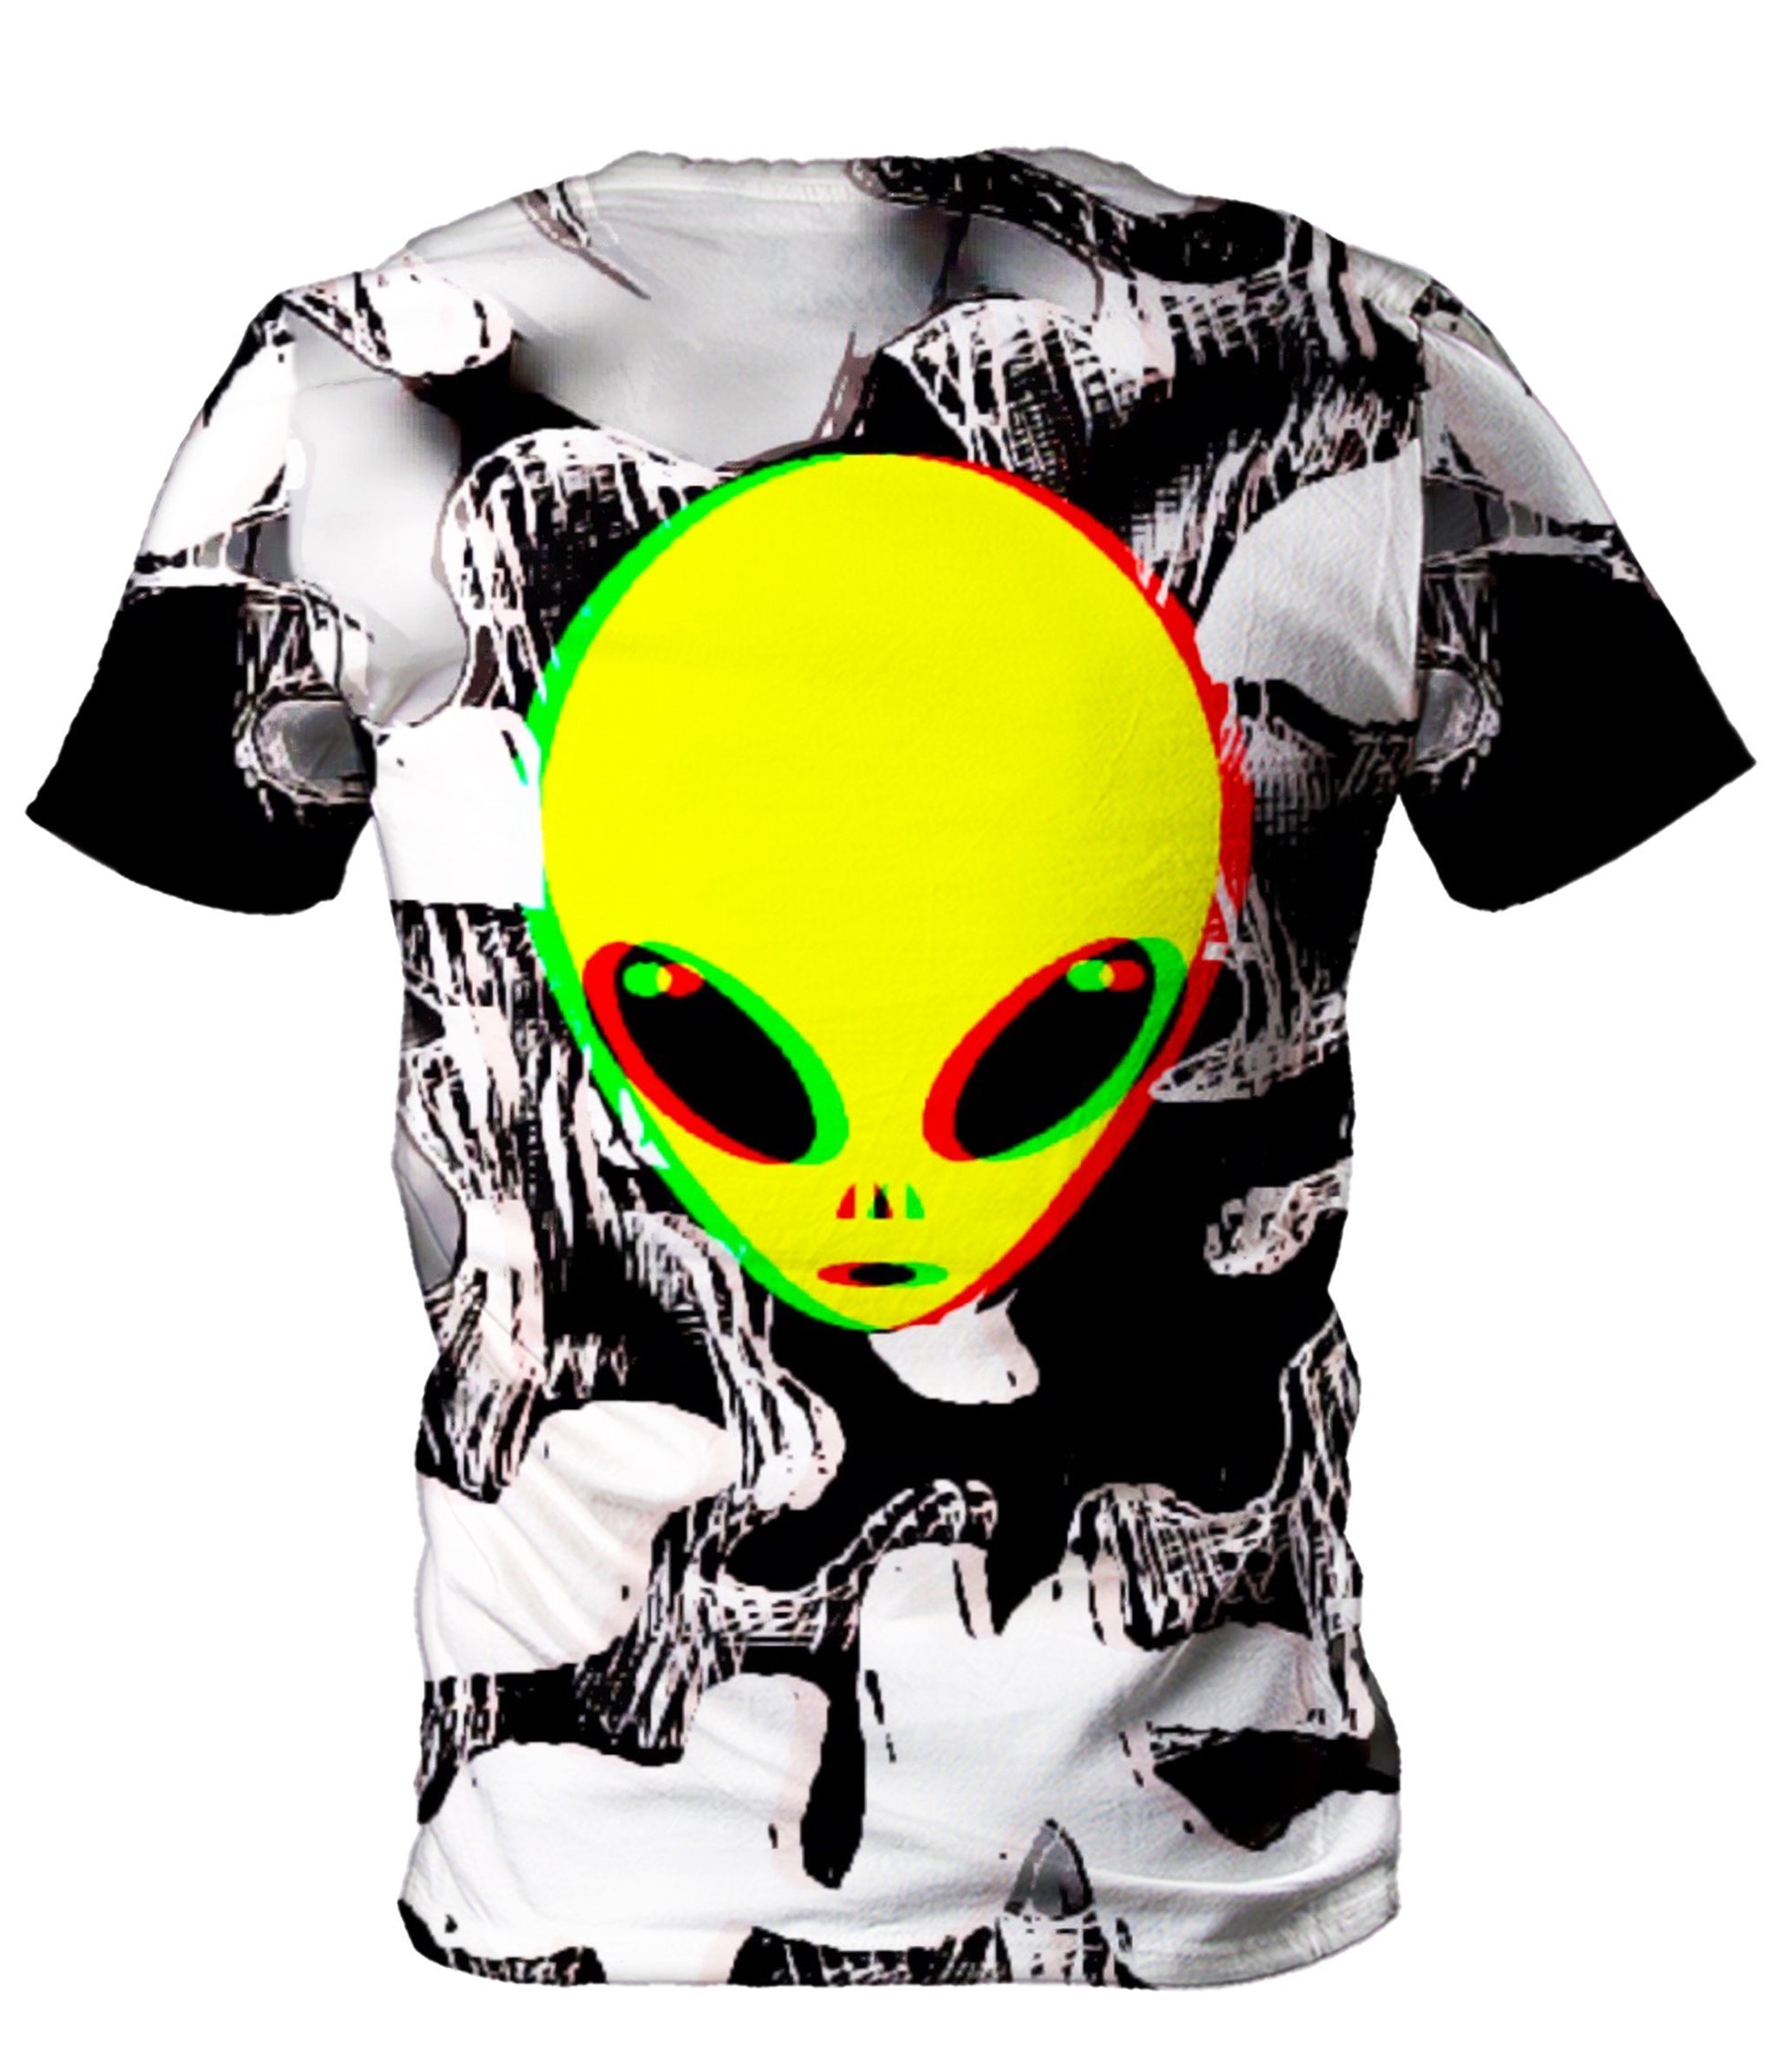 Big Tex Funkadelic Trippy Alien Men's T-Shirt - iEDM